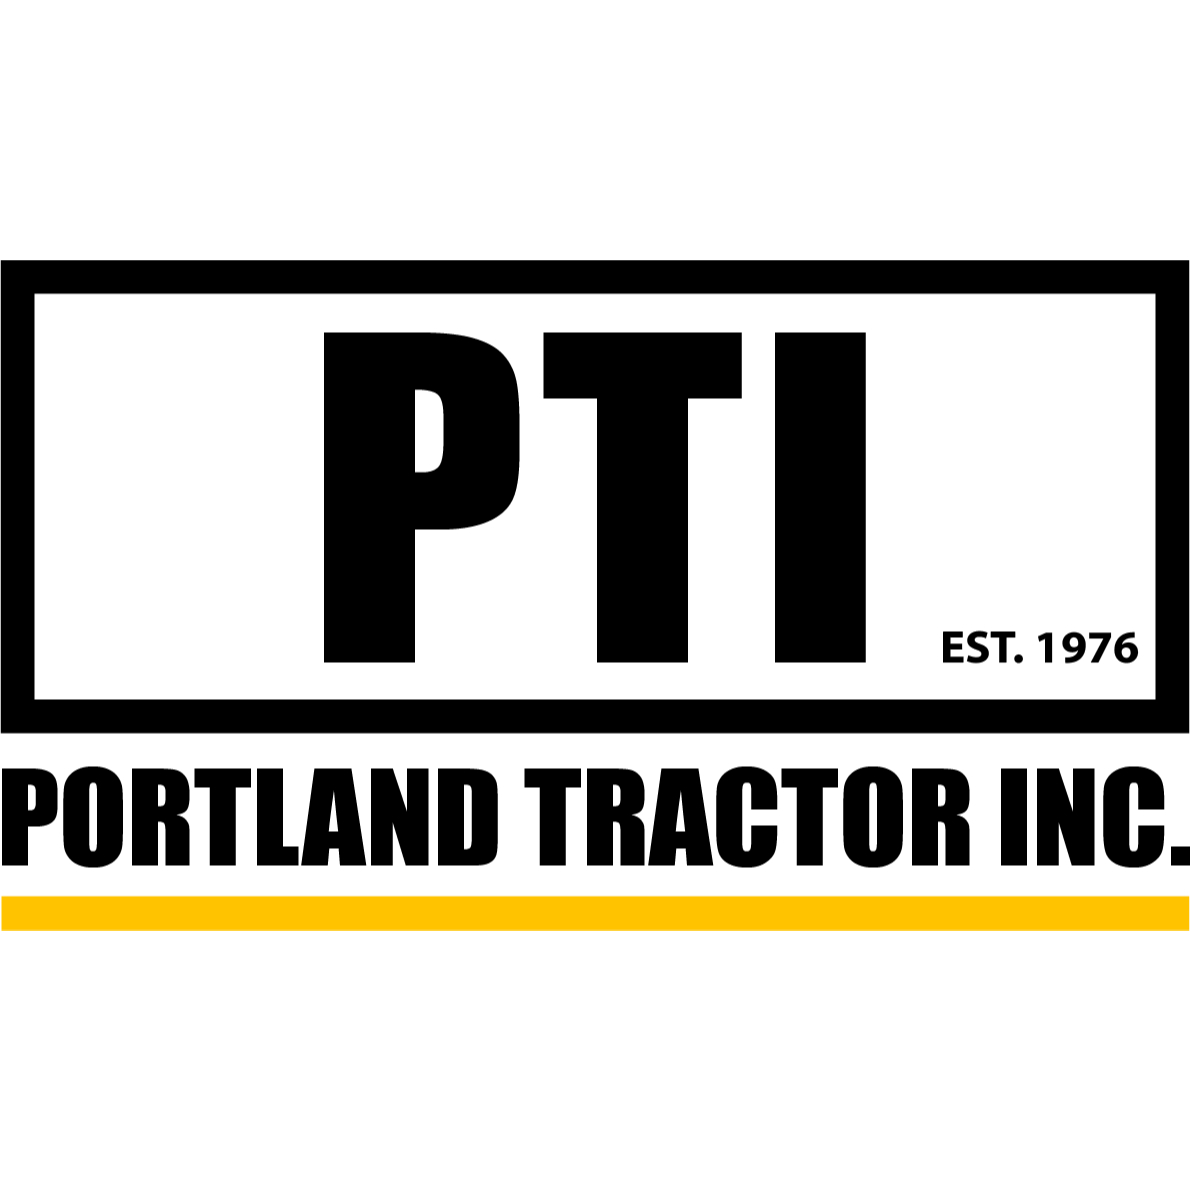 Portland Tractor, Inc. - PTI - Matériaux de construction